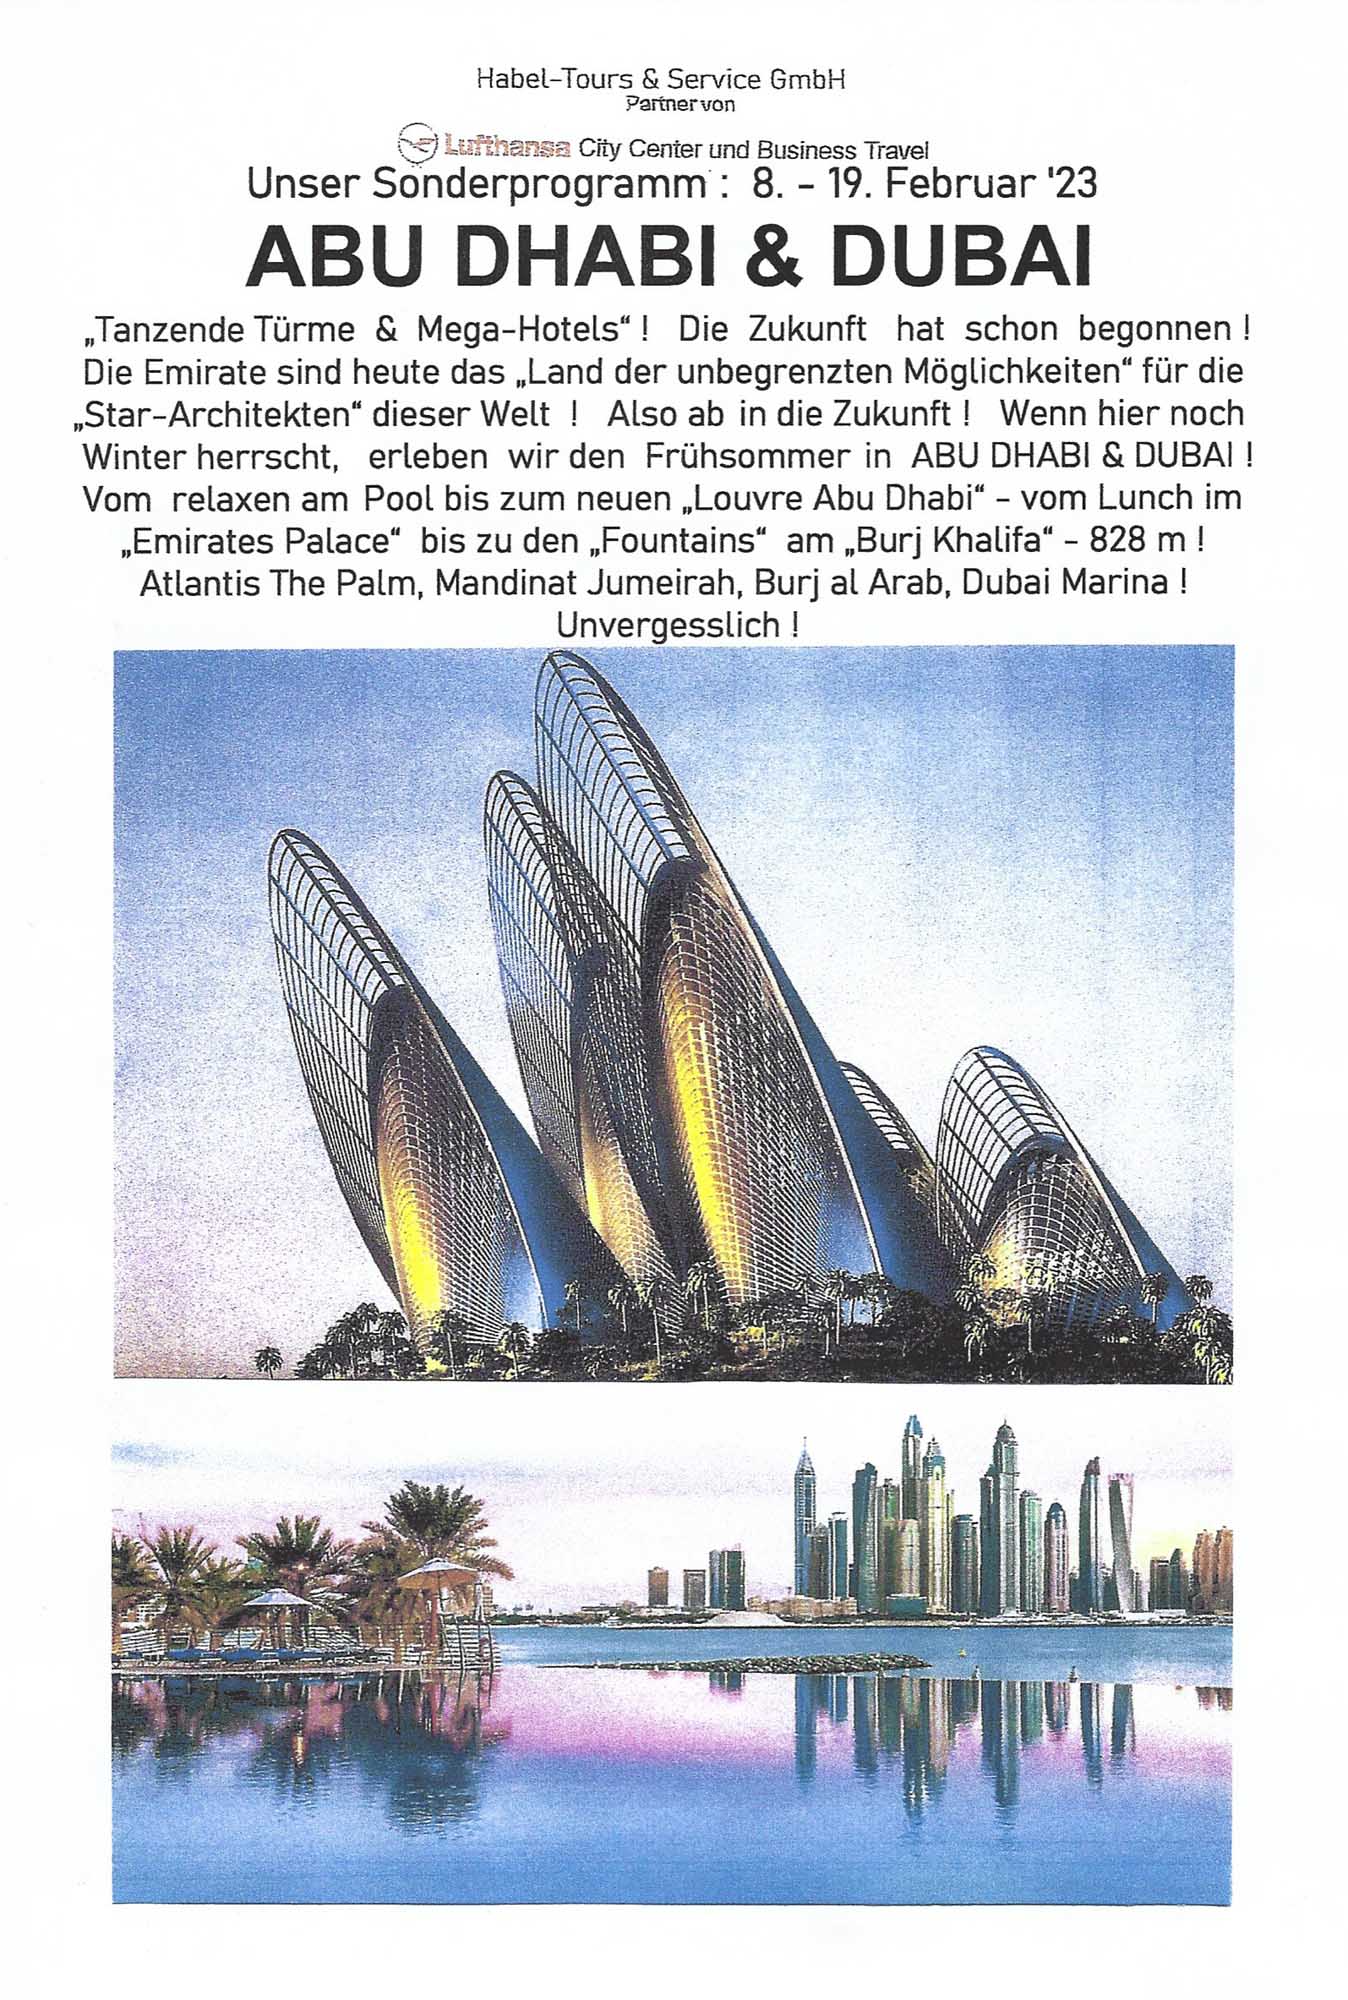 Teaserplakat für die Reise nach Abu Dhabi und Dubai im Februar 2023